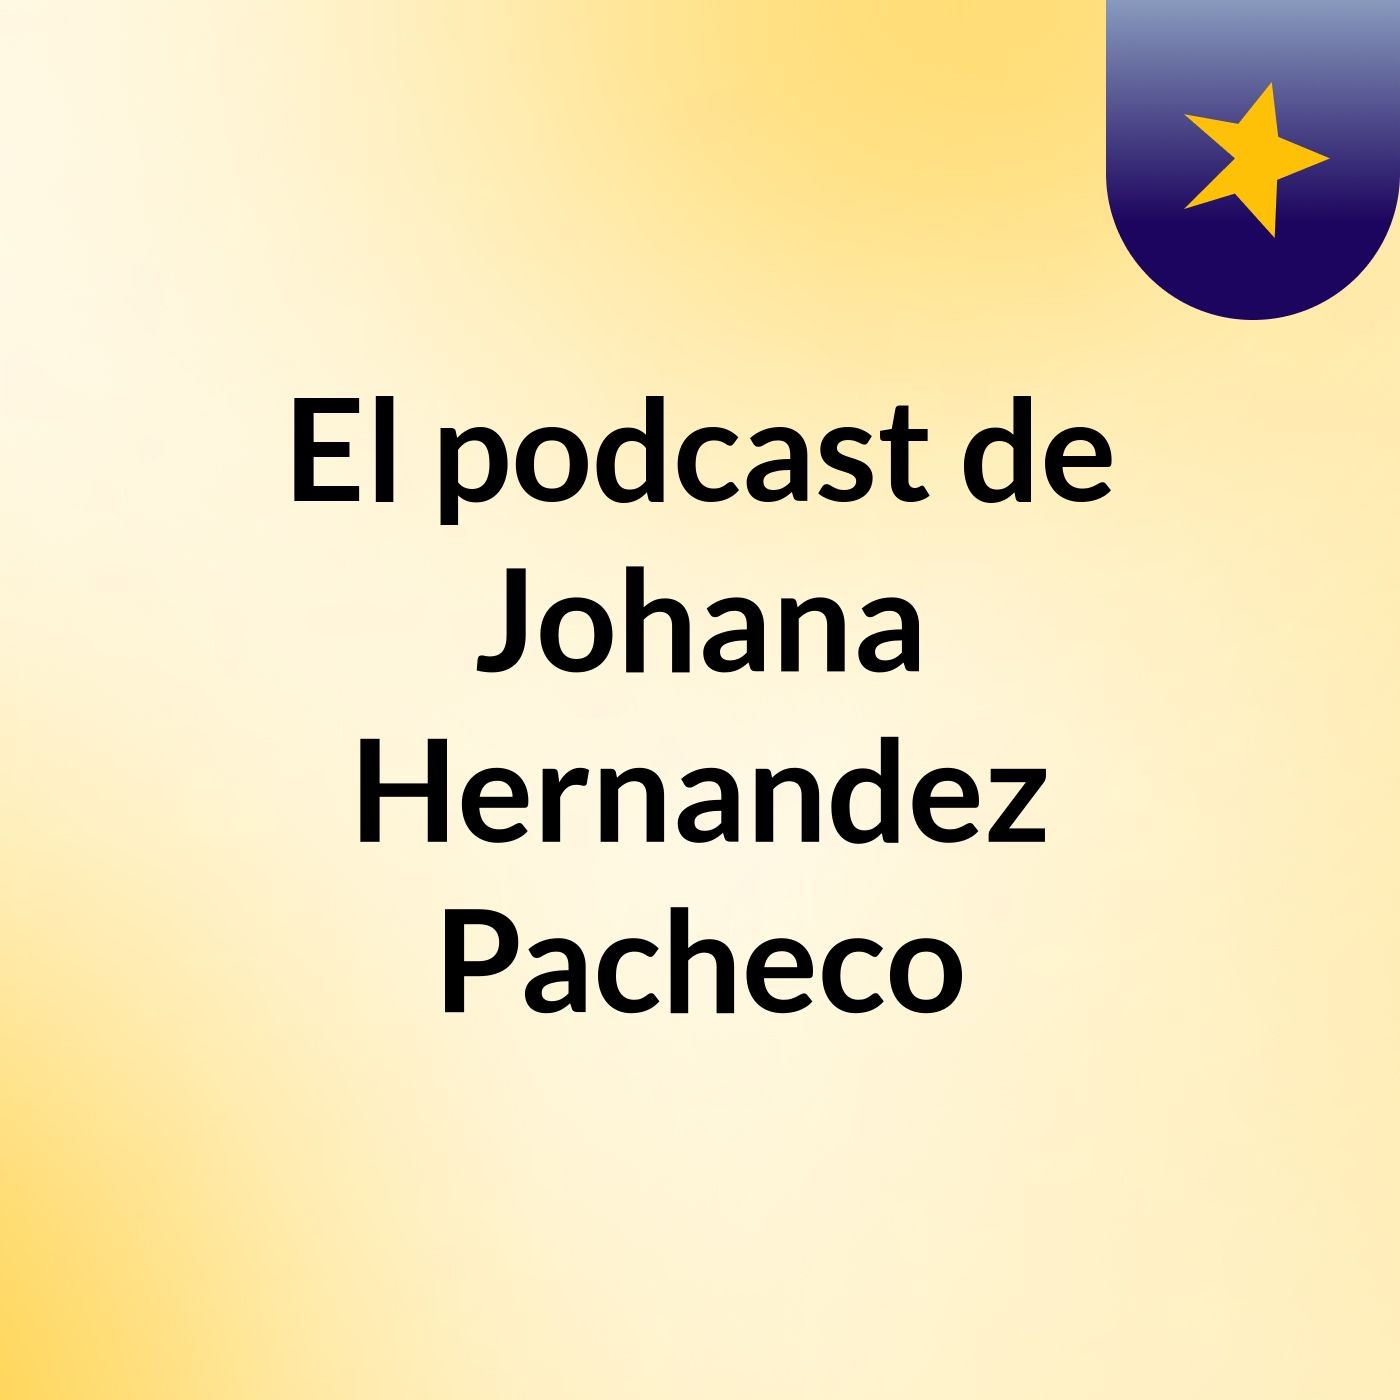 El podcast de Johana Hernandez Pacheco